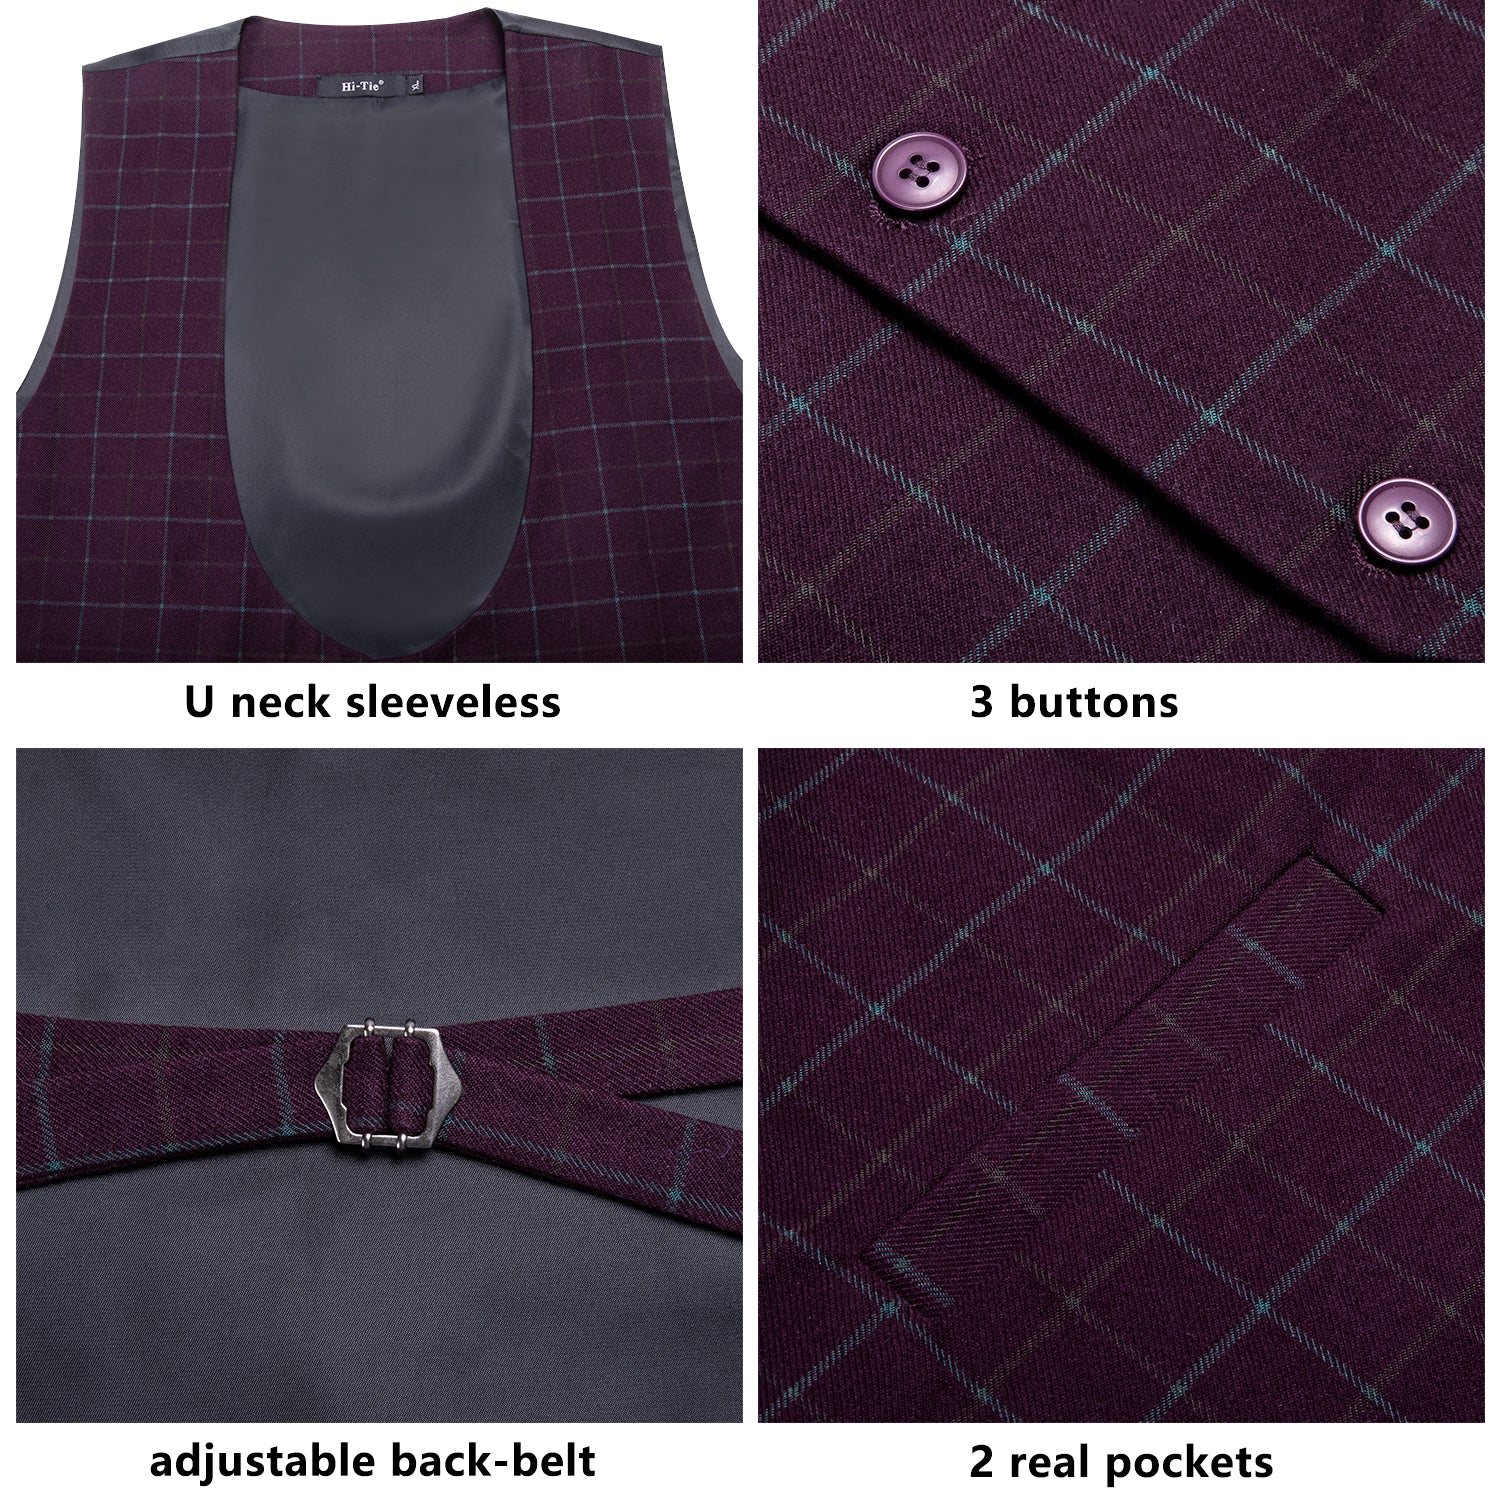 Clearance Sale Burgundy Plaid Men's Vest Hanky Cufflinks Tie Set Waistcoat Suit Set